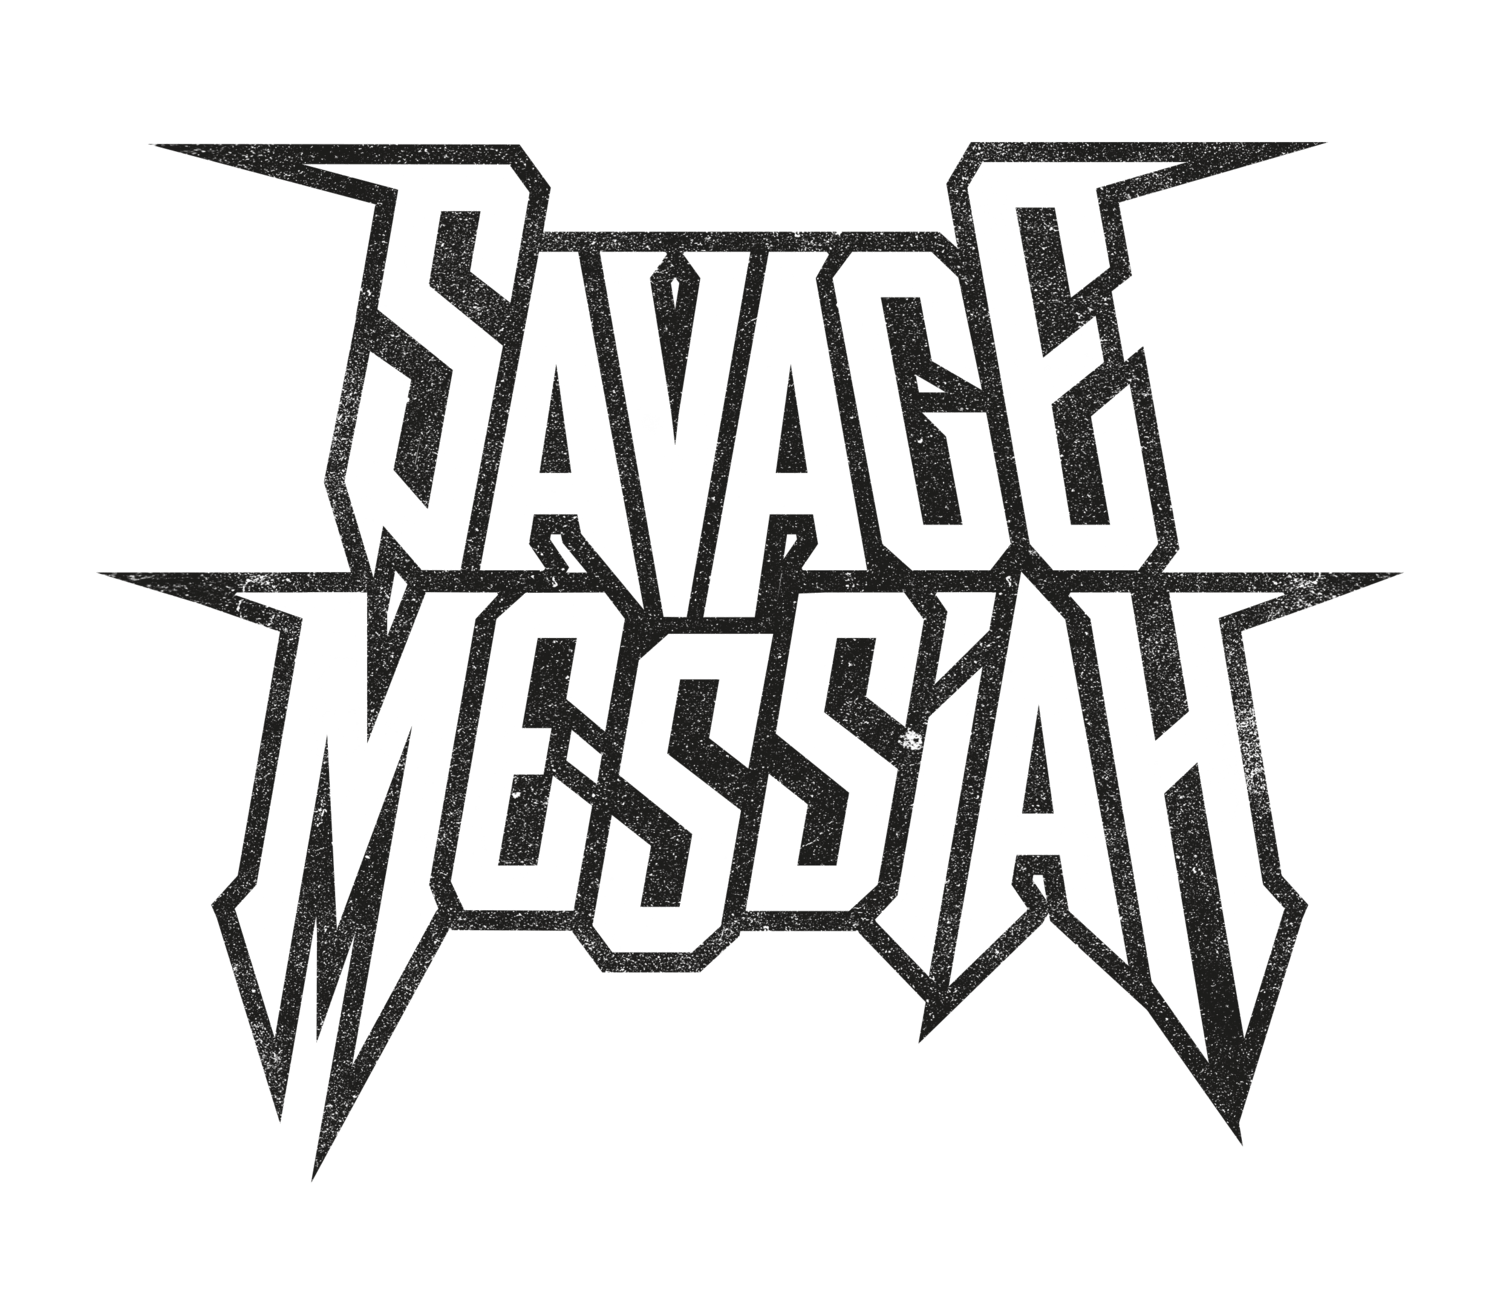 Savage Band's Logo - SAVAGE MESSIAH